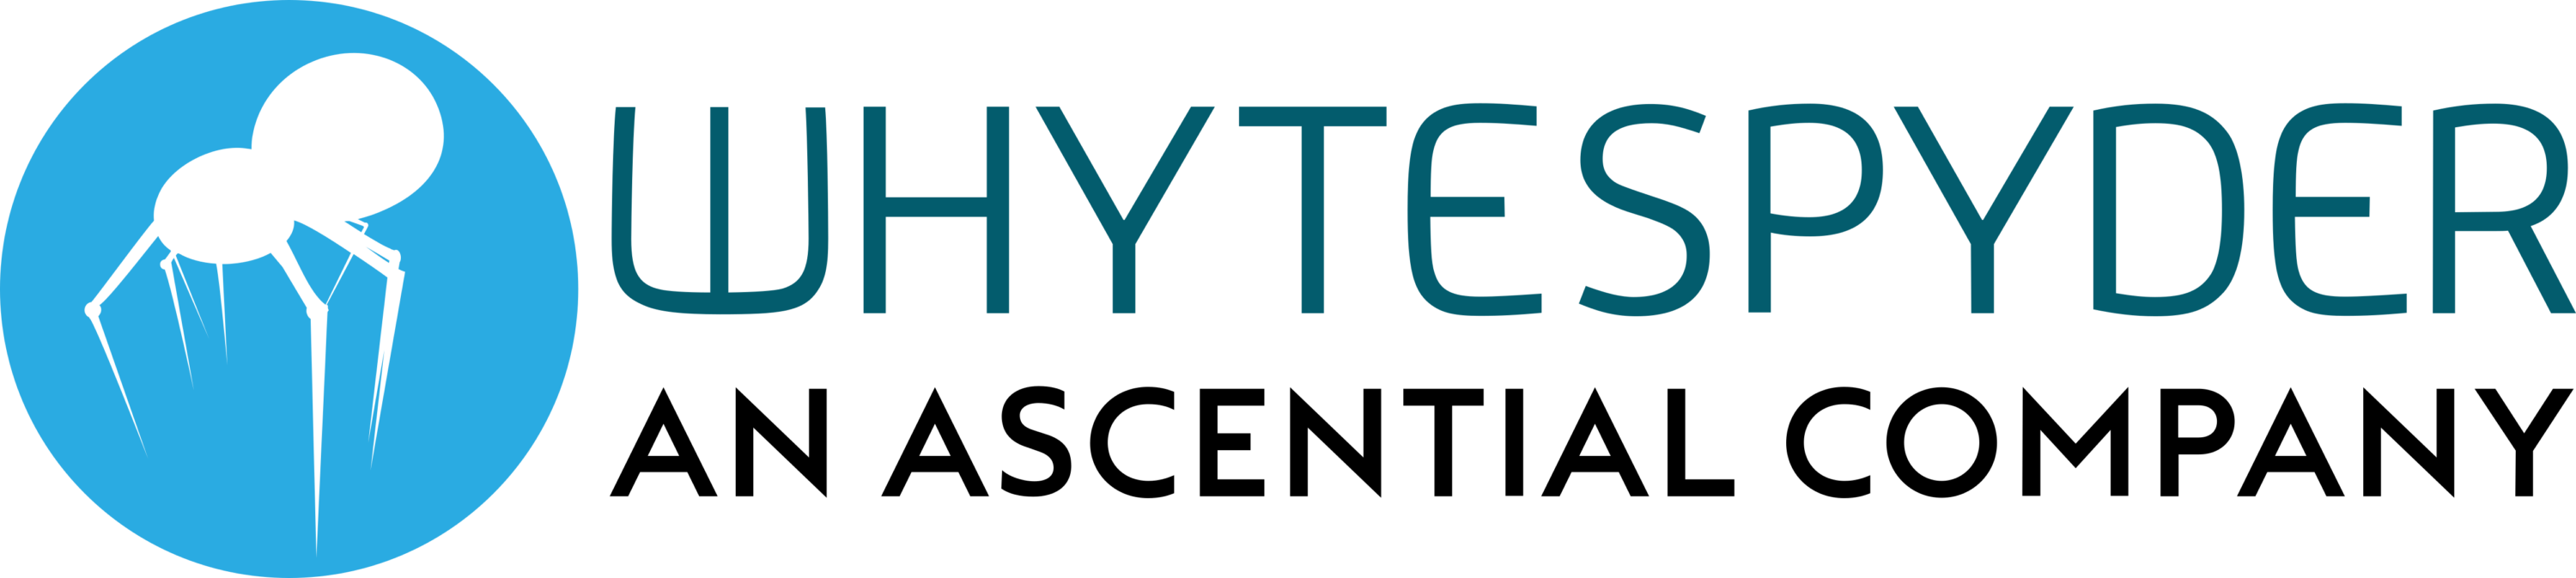 Whytespyder Logo